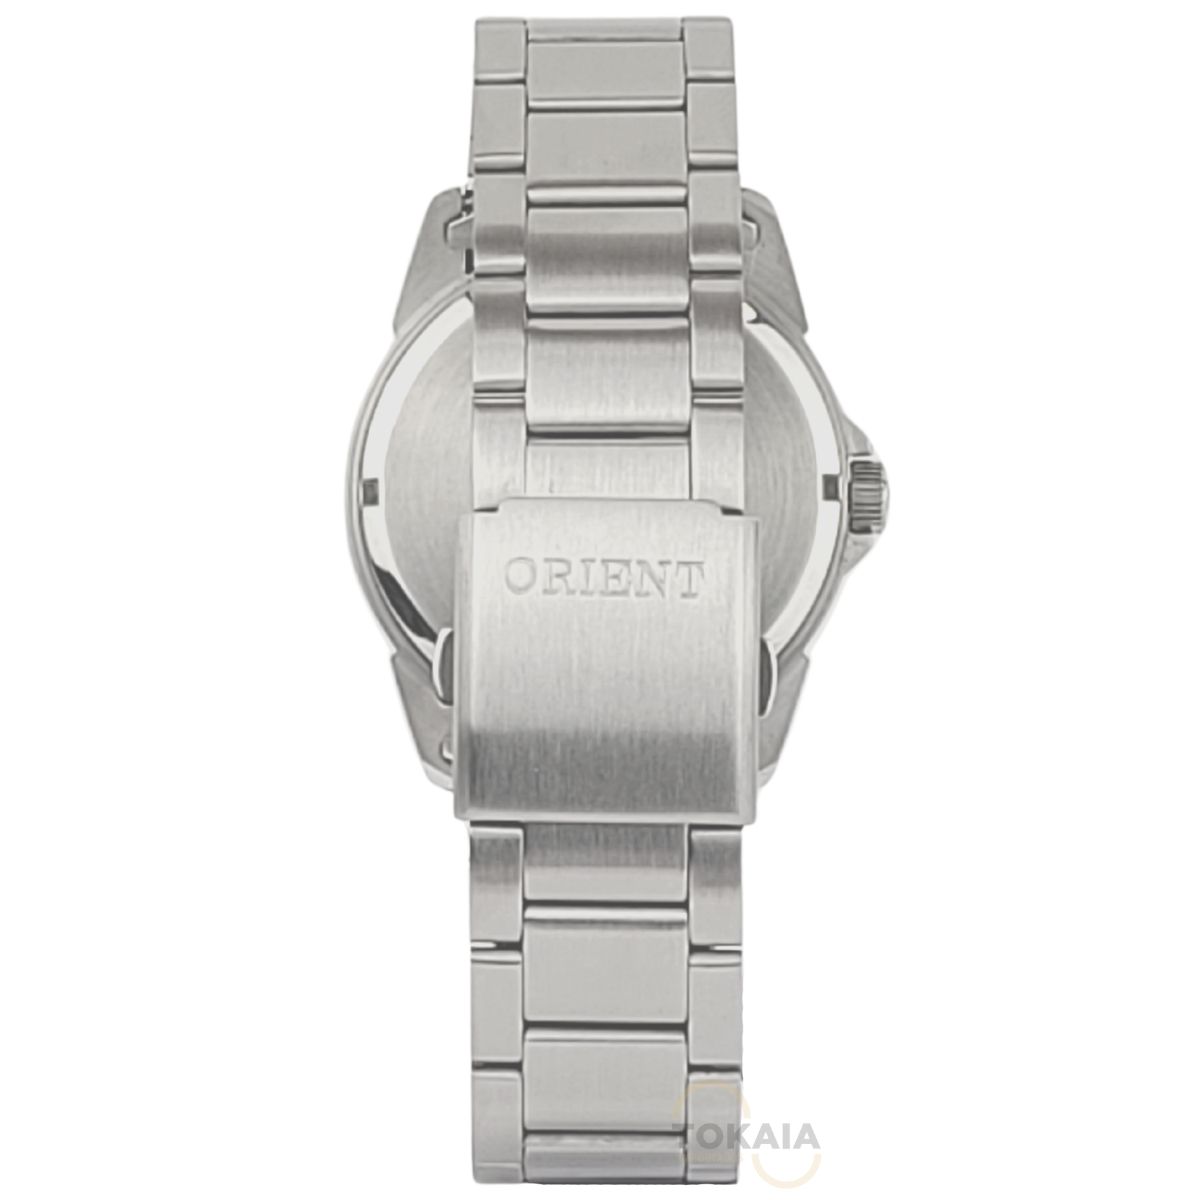 Relógio Orient Masculino Analógico Prata MBSS1154A E2SX